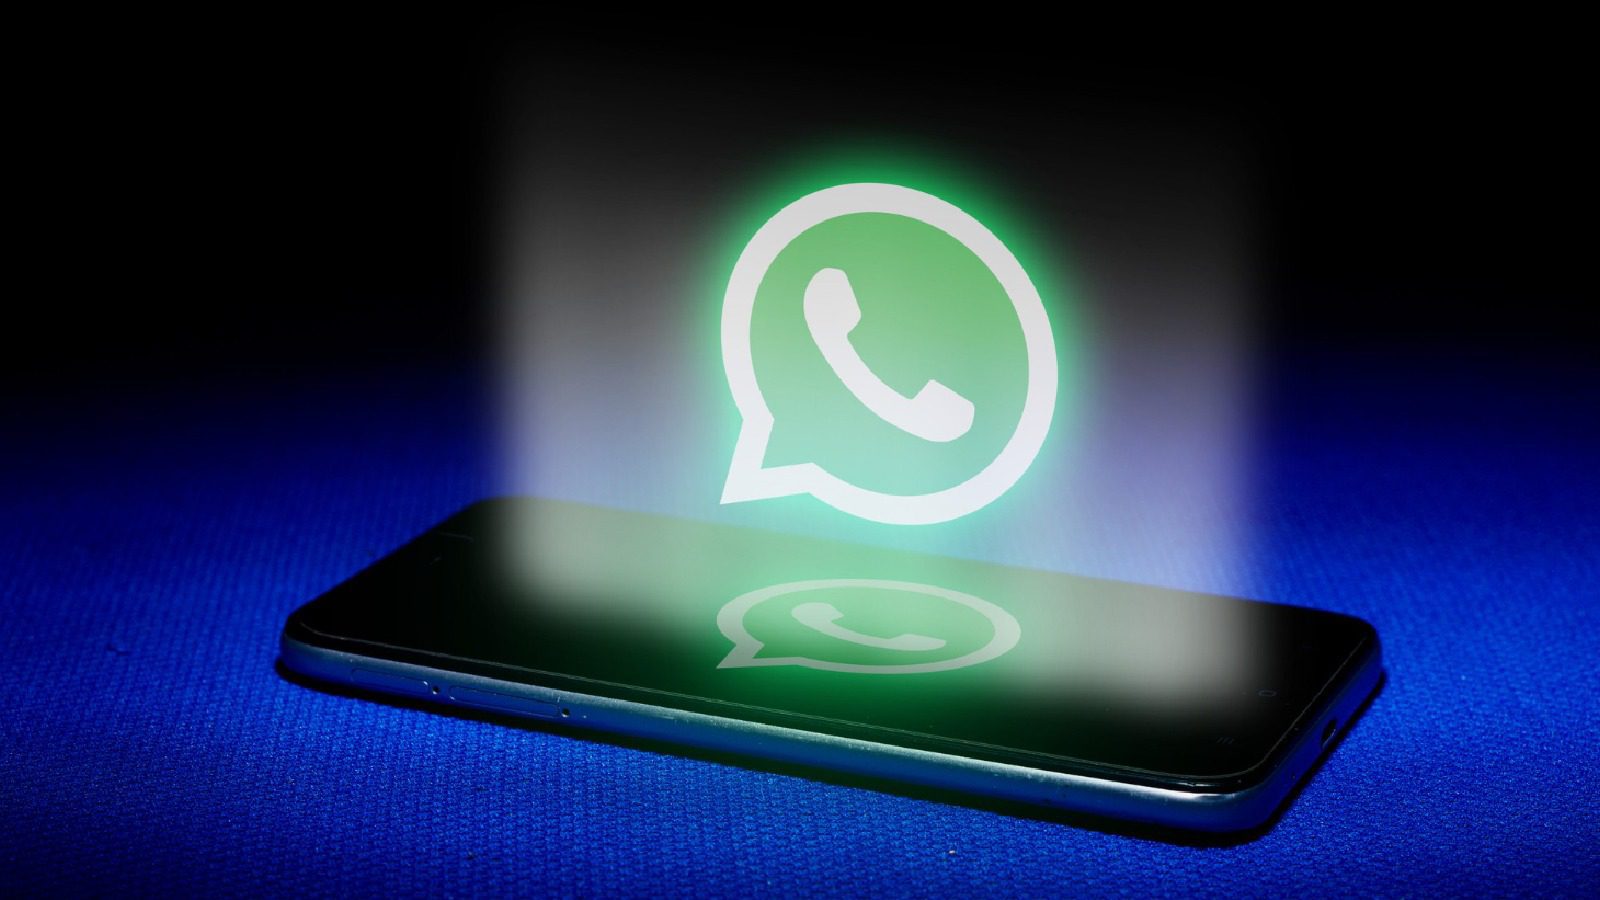 WhatsApp Voice Call Interface